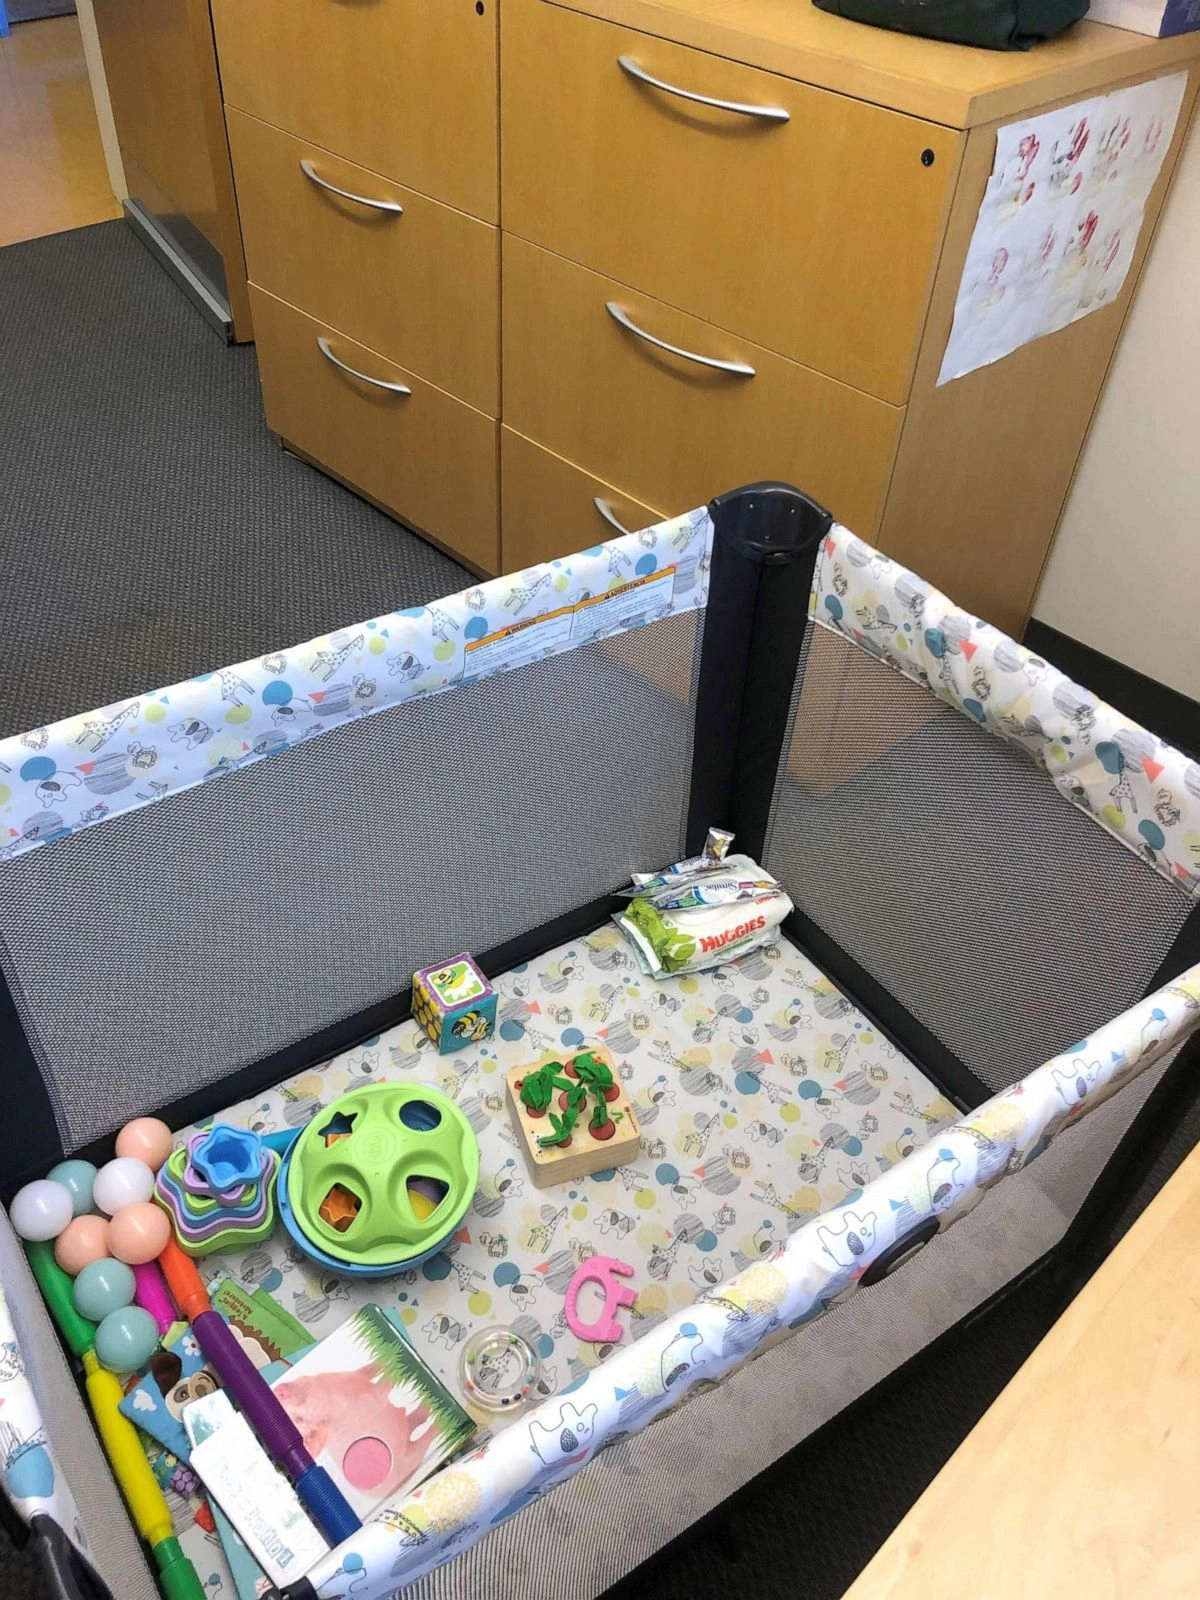 Профессор нейробиологии Трой Литтлтон установил в офисе детскую кроватку, когда узнал, что Карен будет приходить на работу с ребенком